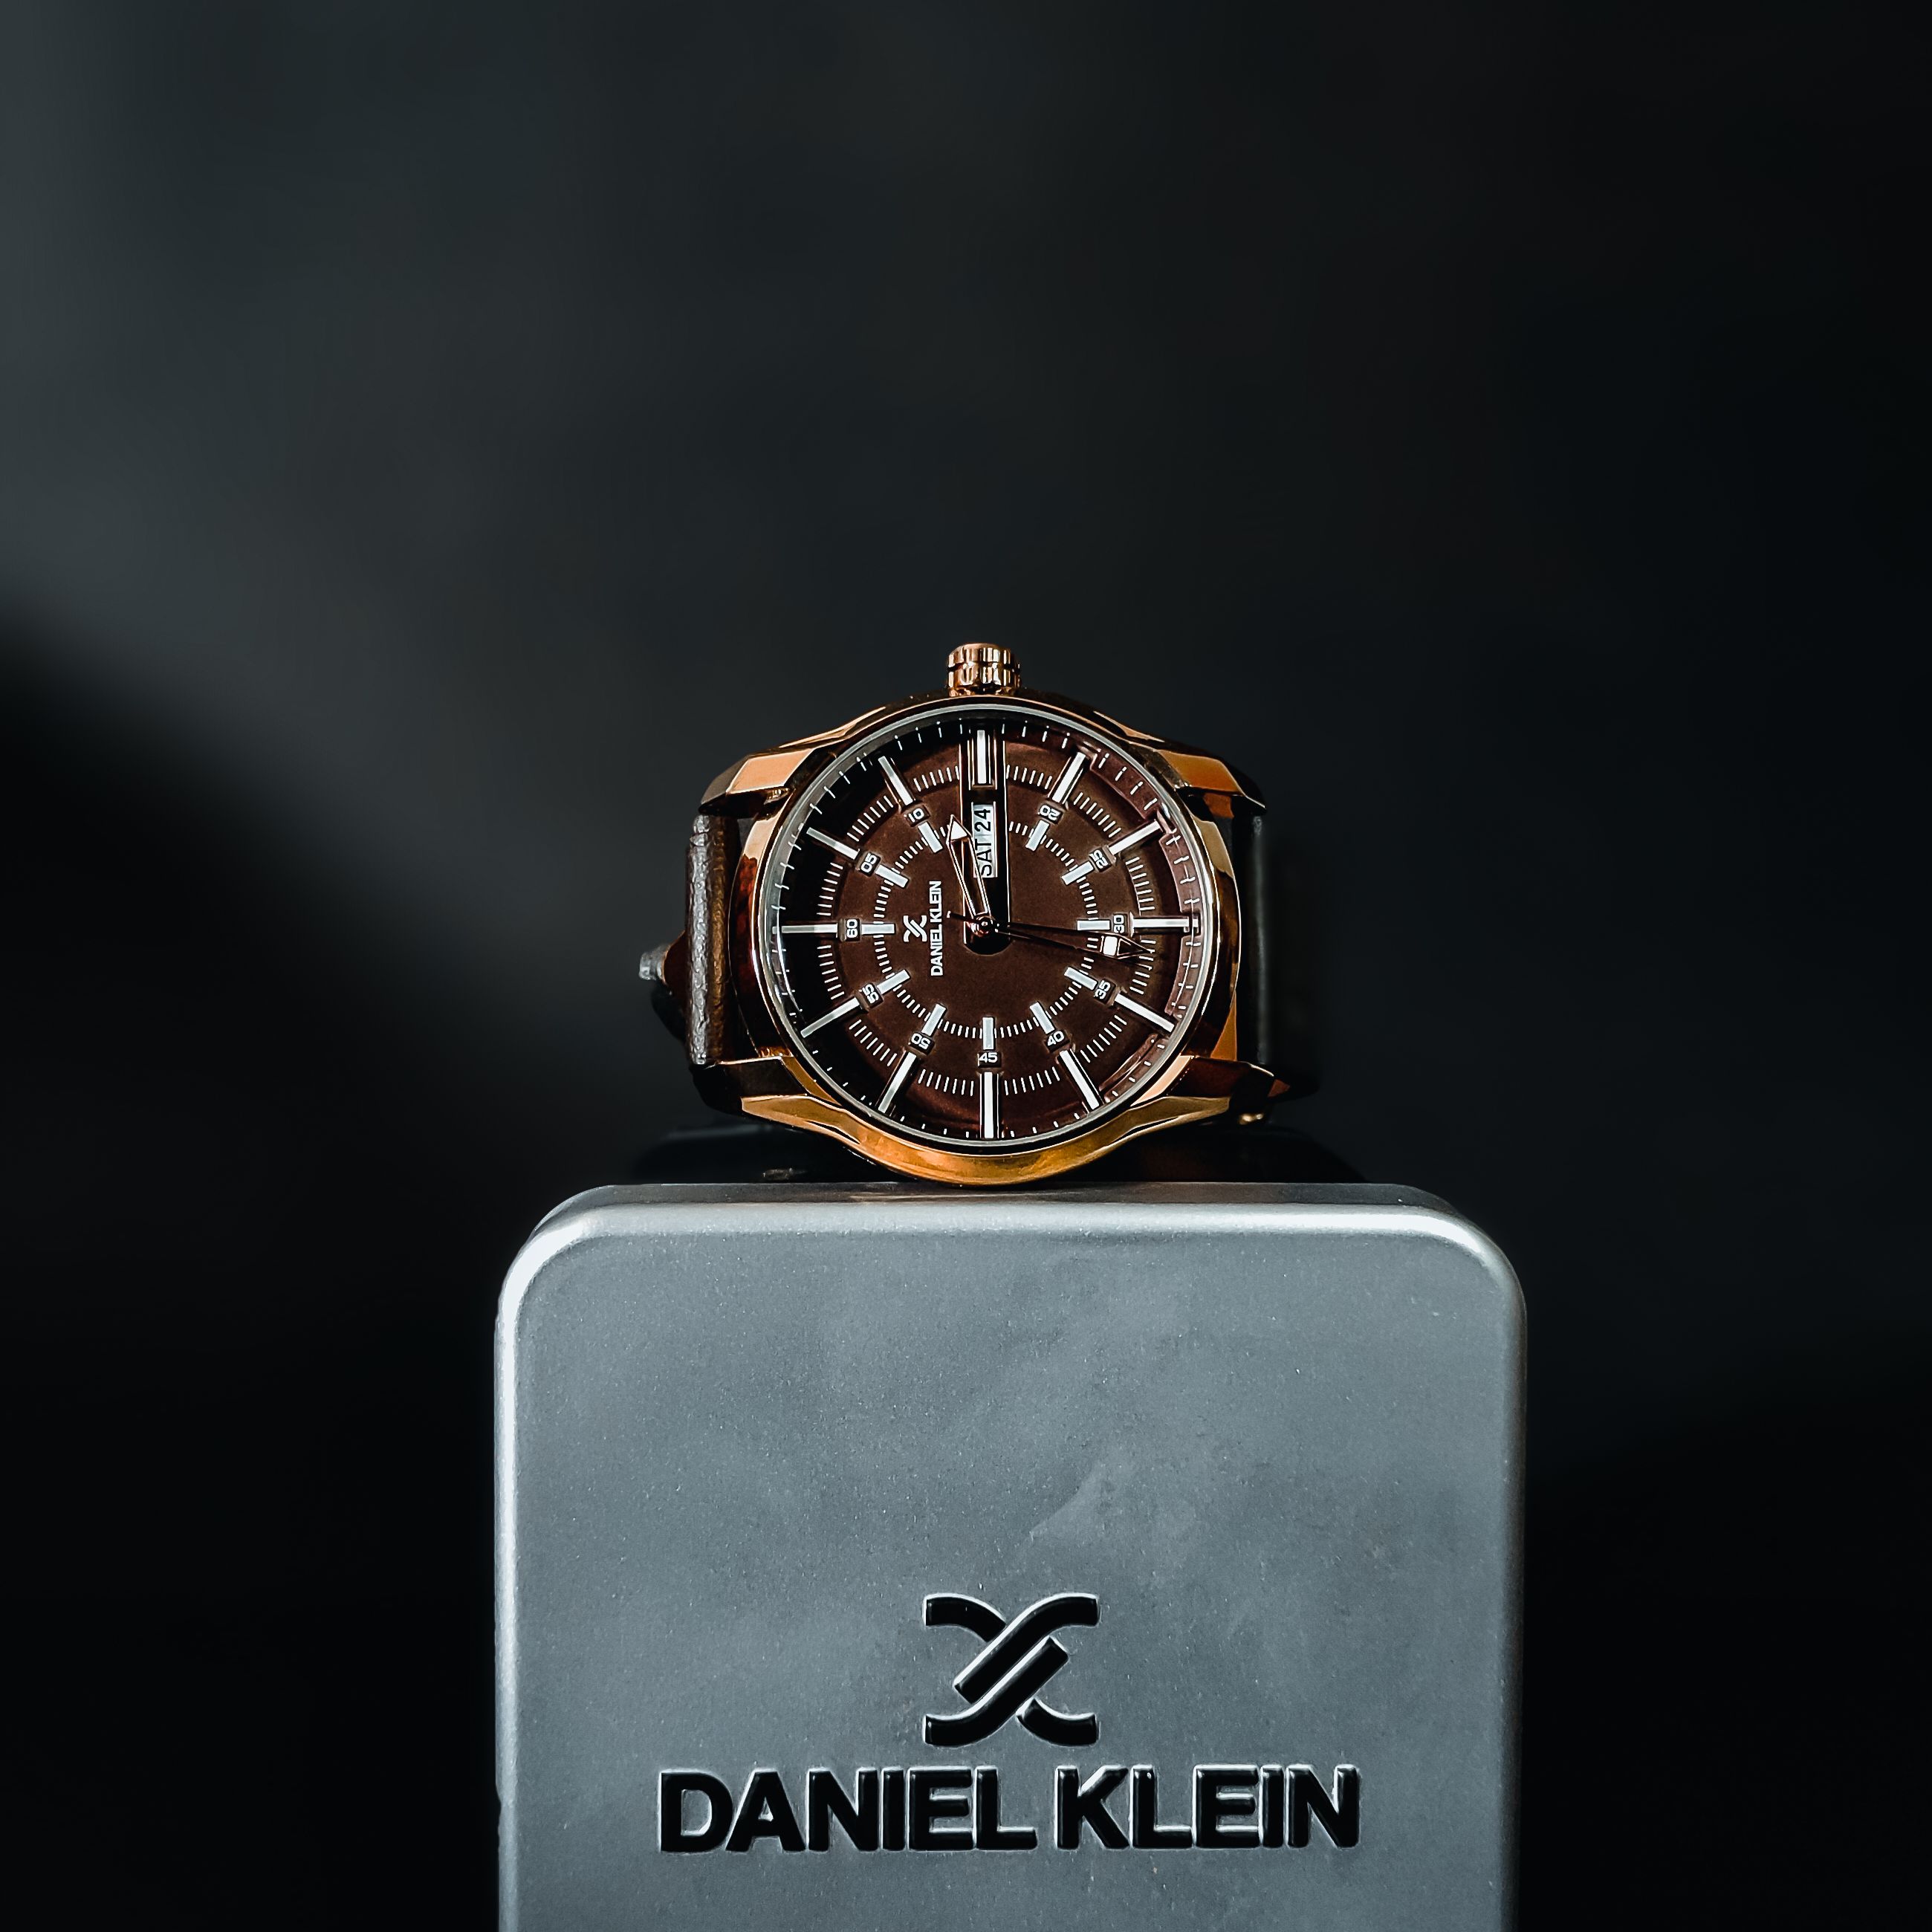 Daniel Klein watches